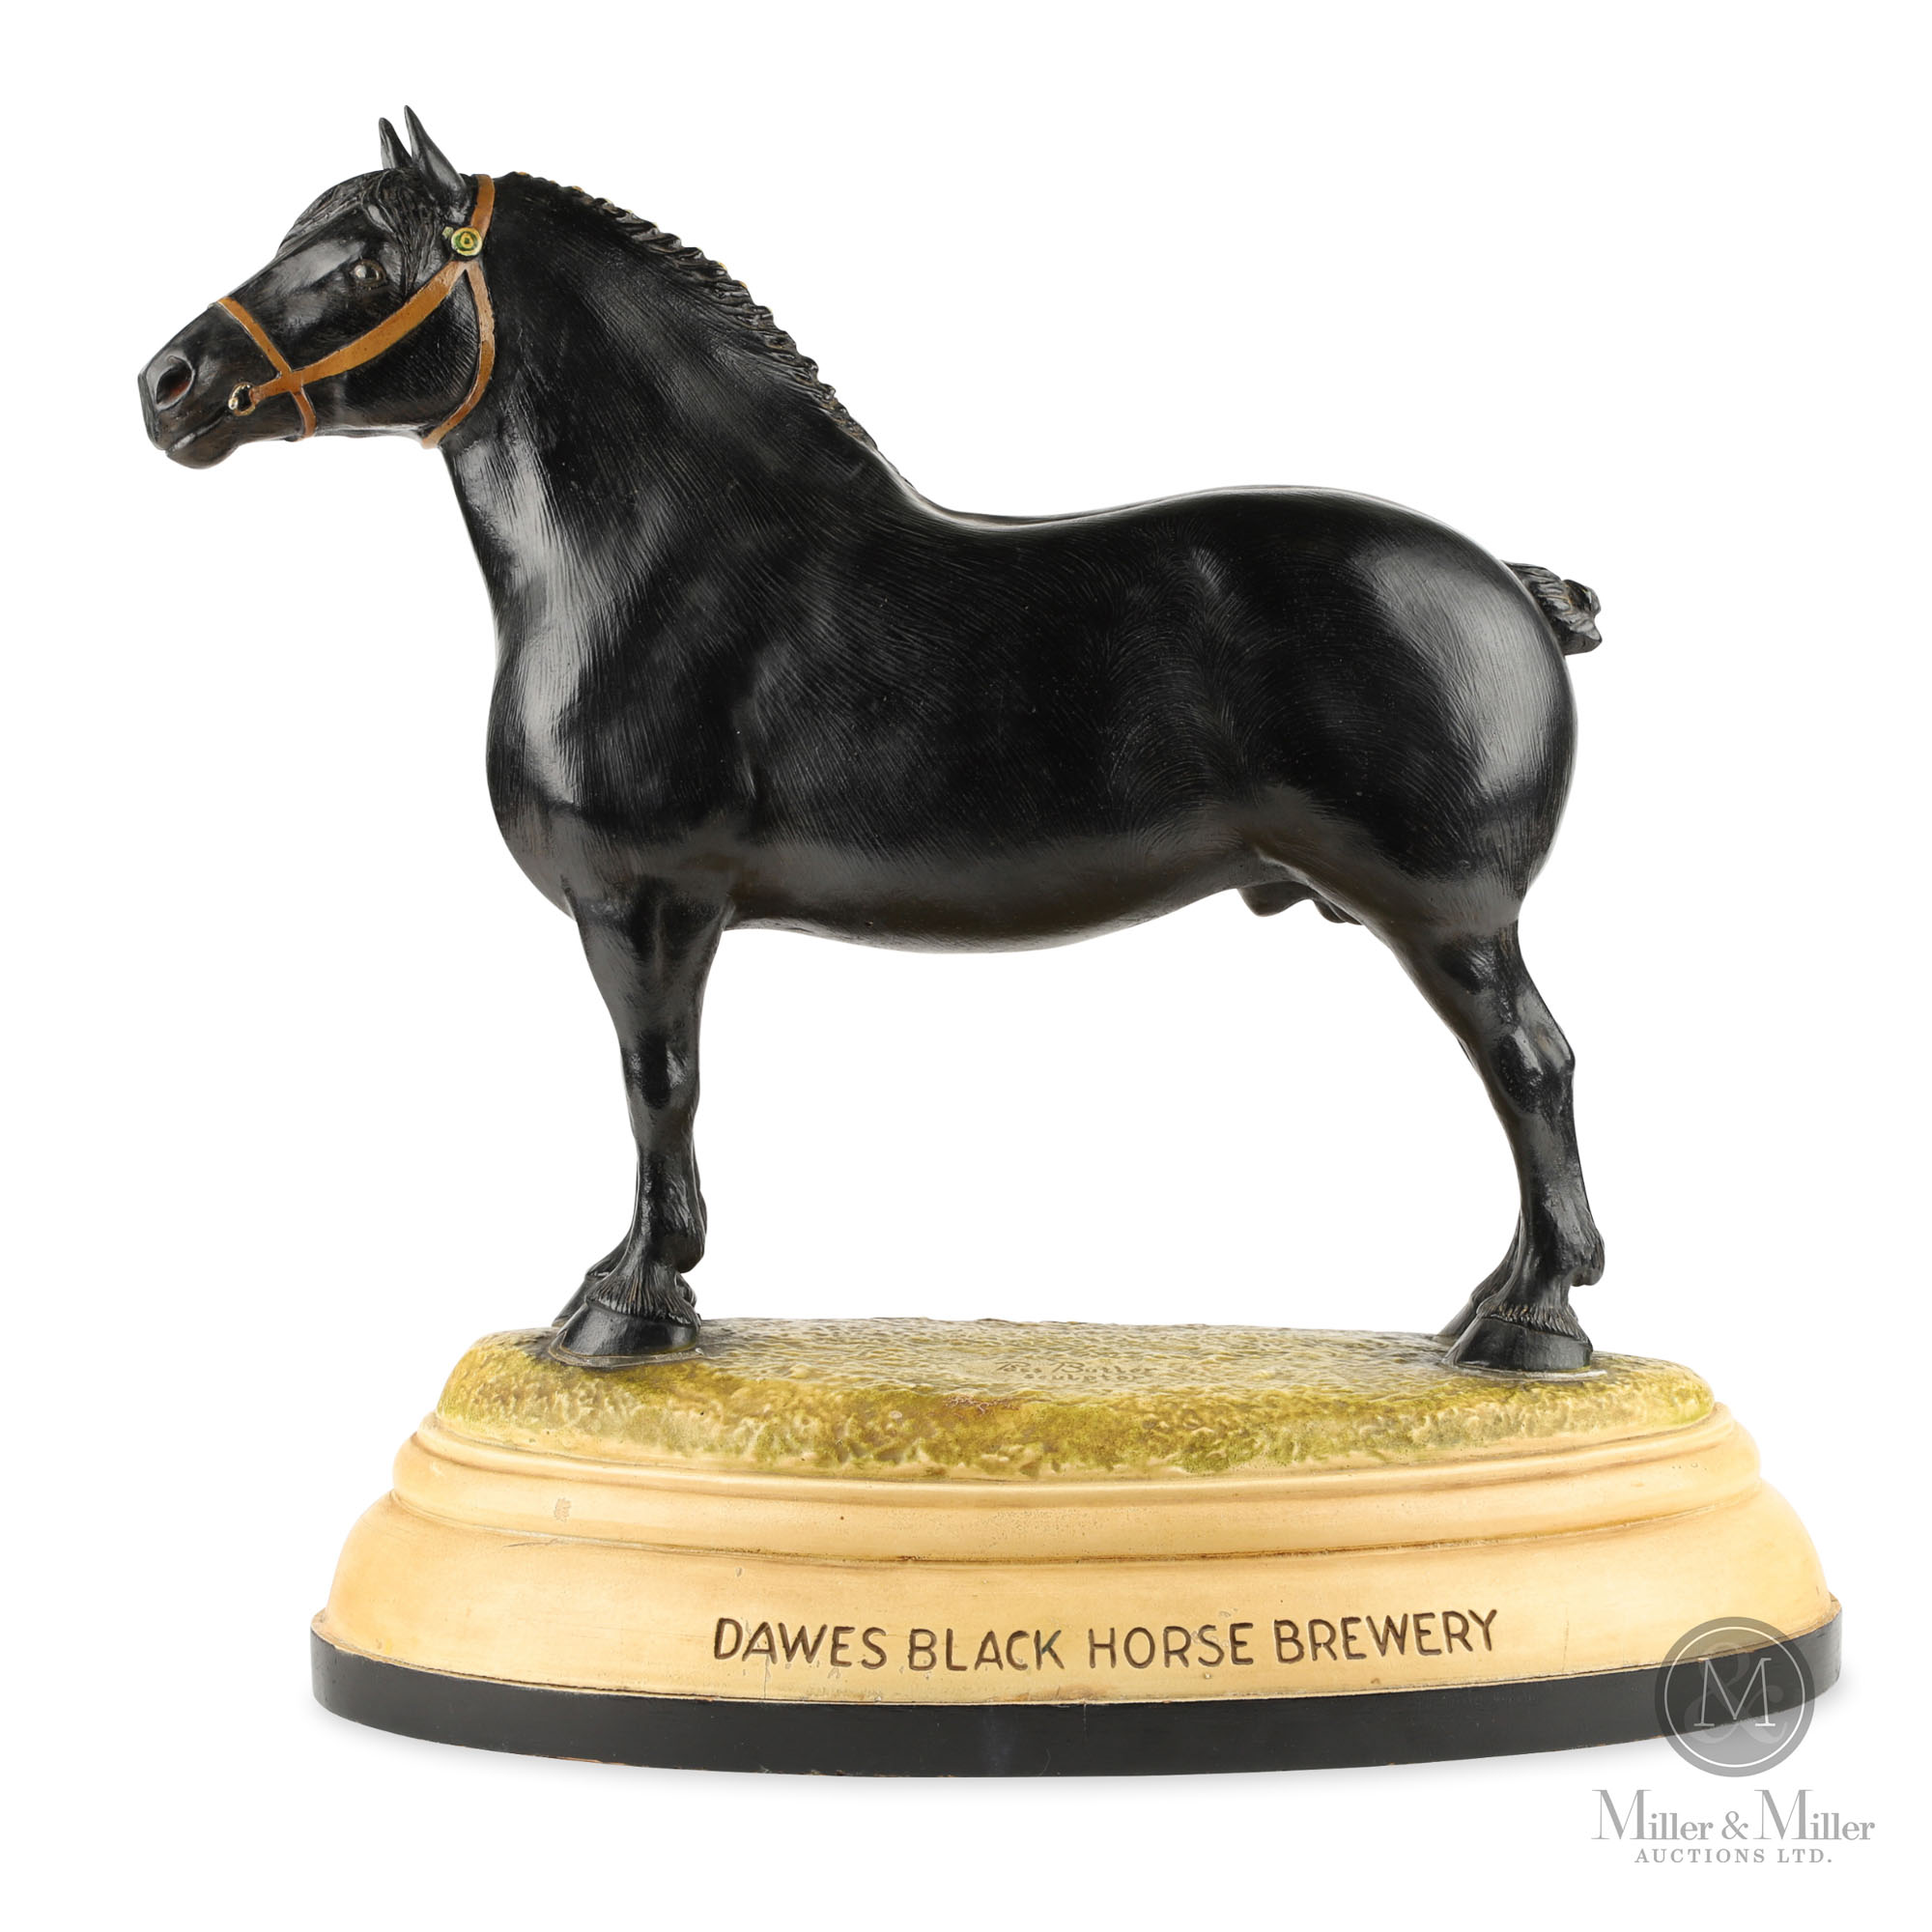 Percheron horse ornament